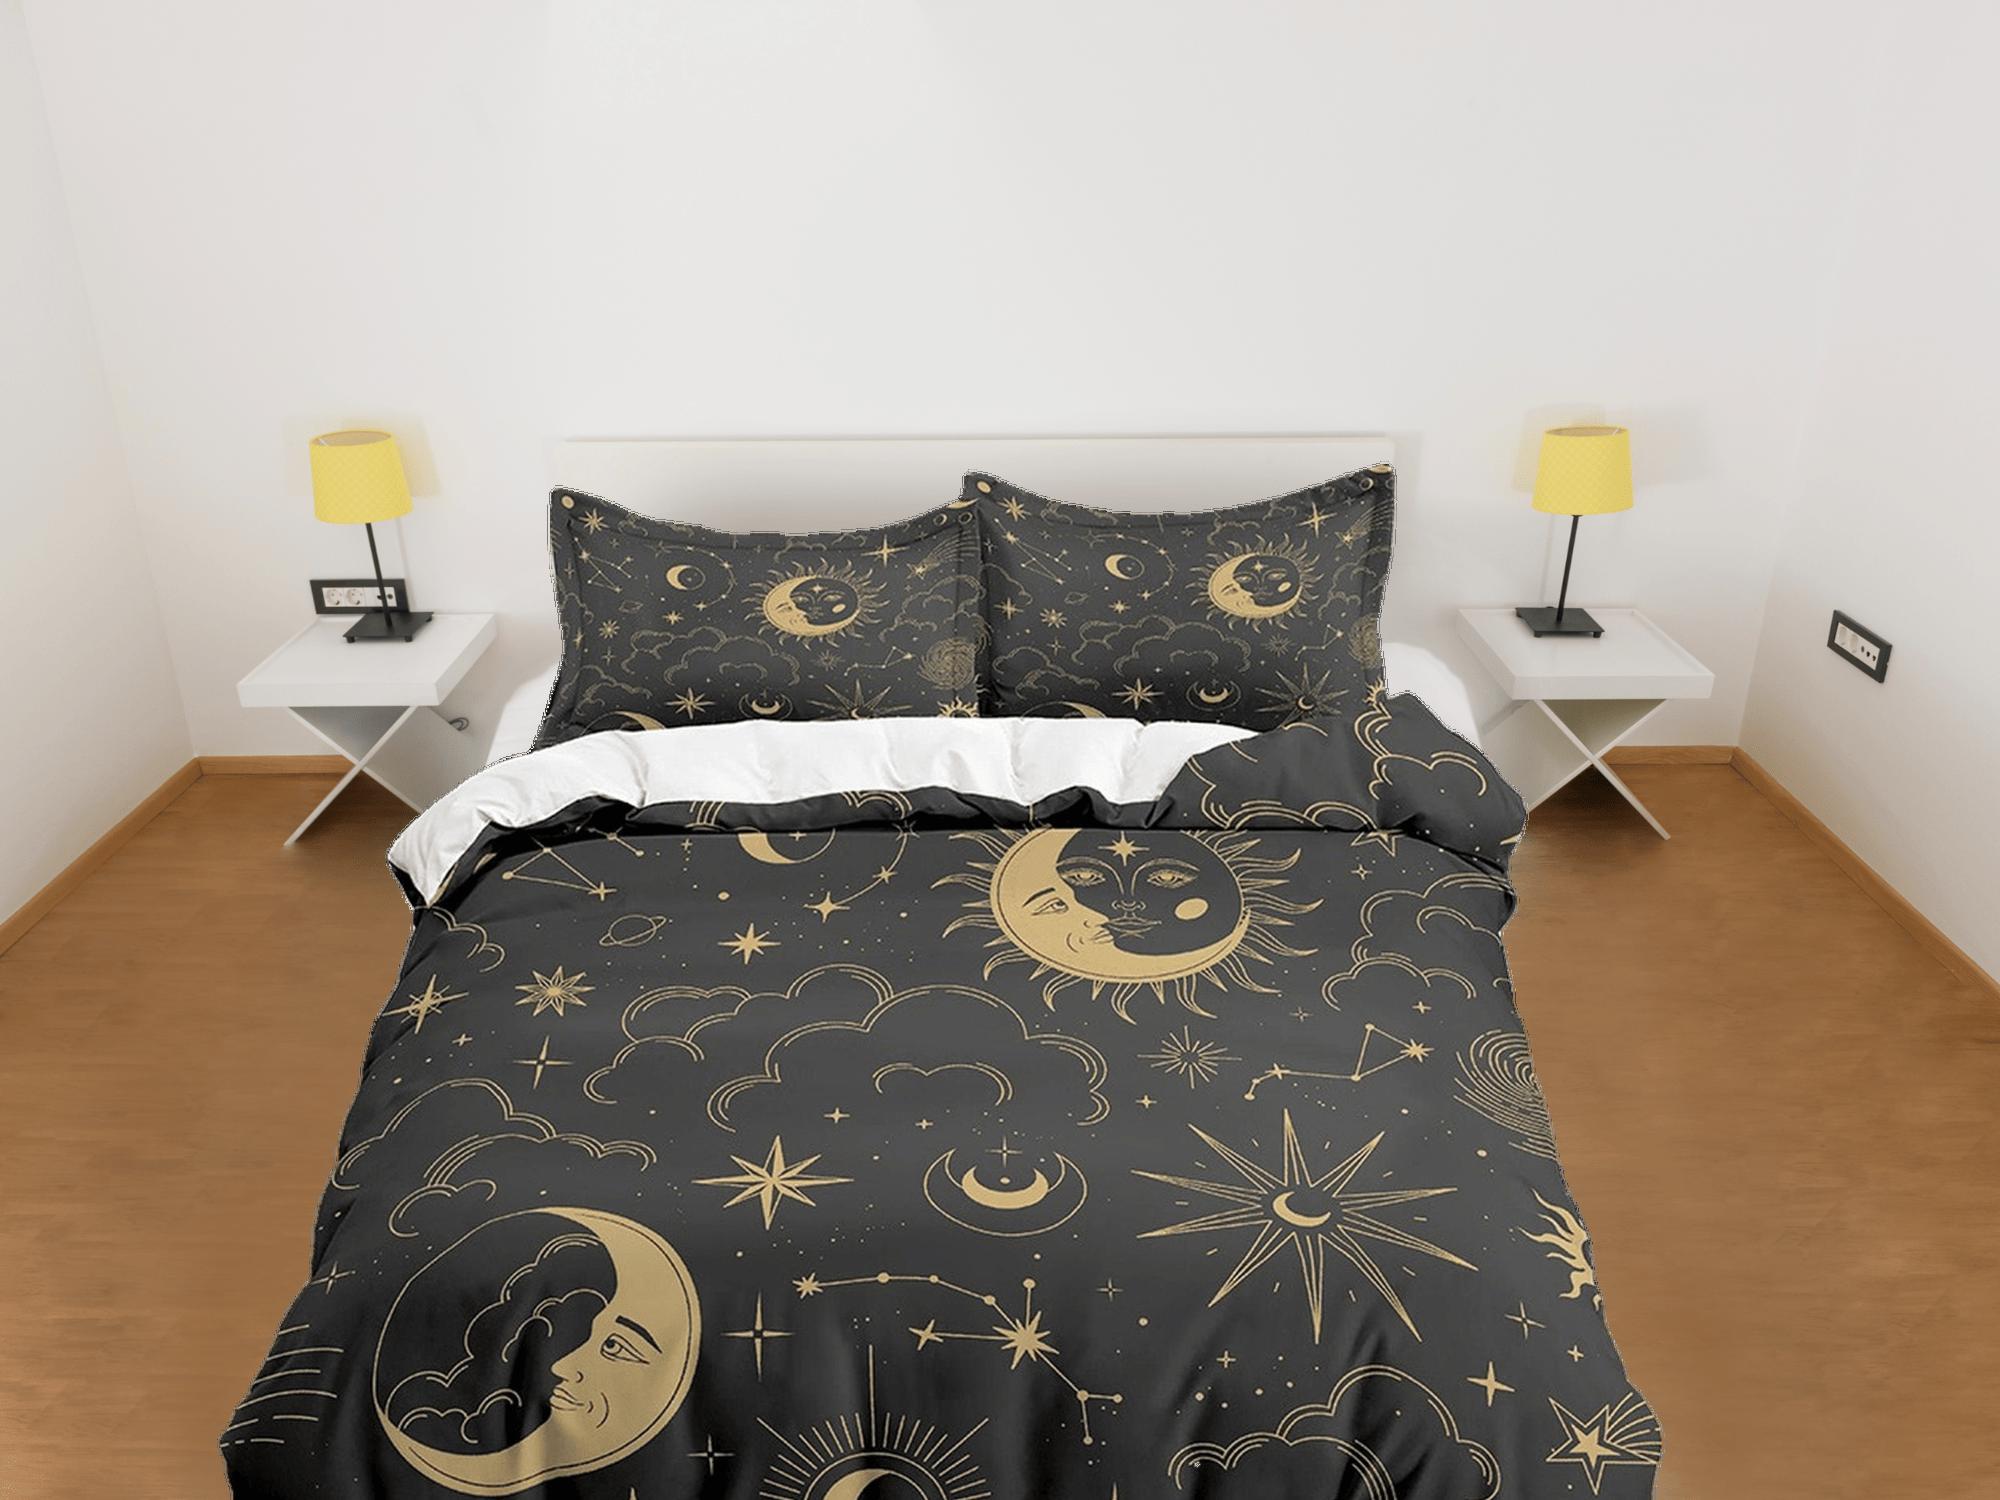 daintyduvet Celestial black crescent moon bedding bronze witchy decor dorm bedding, aesthetic duvet, boho bedding full king queen, astrology gift gothic